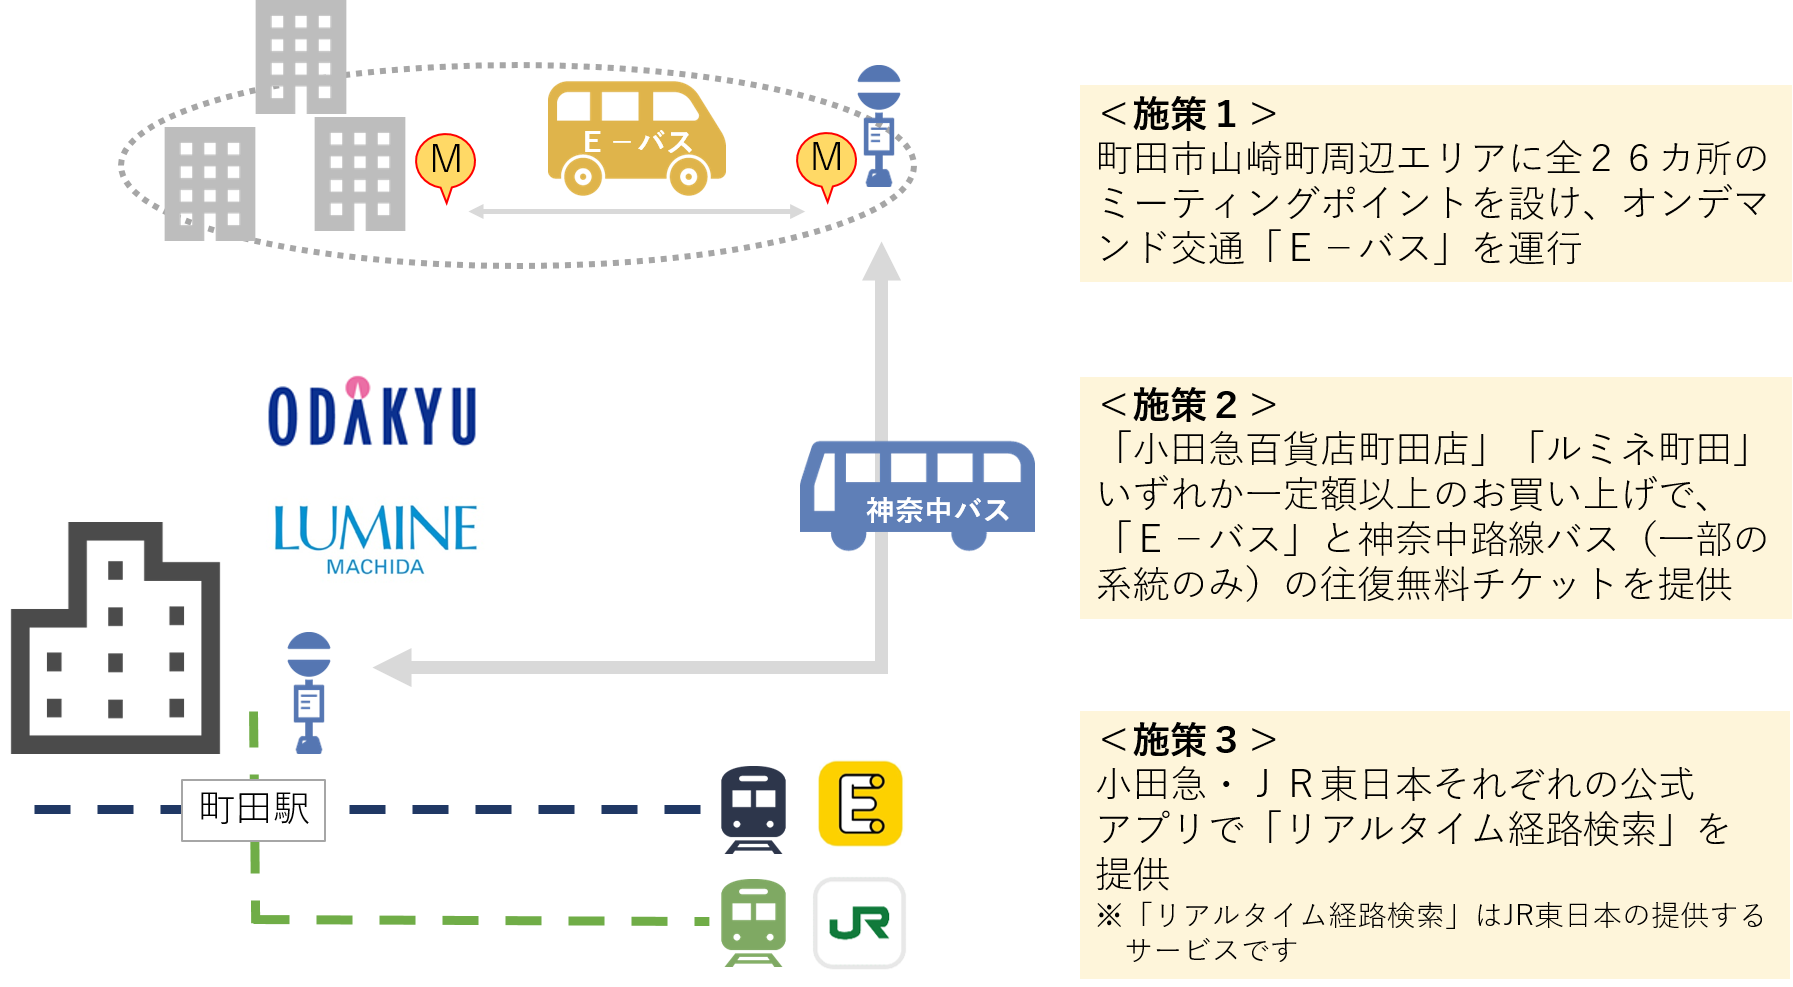 １月１８日から町田市内にて公共交通を活用した連携をスタート 東京都 Maas社会実装支援事業 としてオンデマンド交通に係る実証を行います 小田急電鉄株式会社のプレスリリース